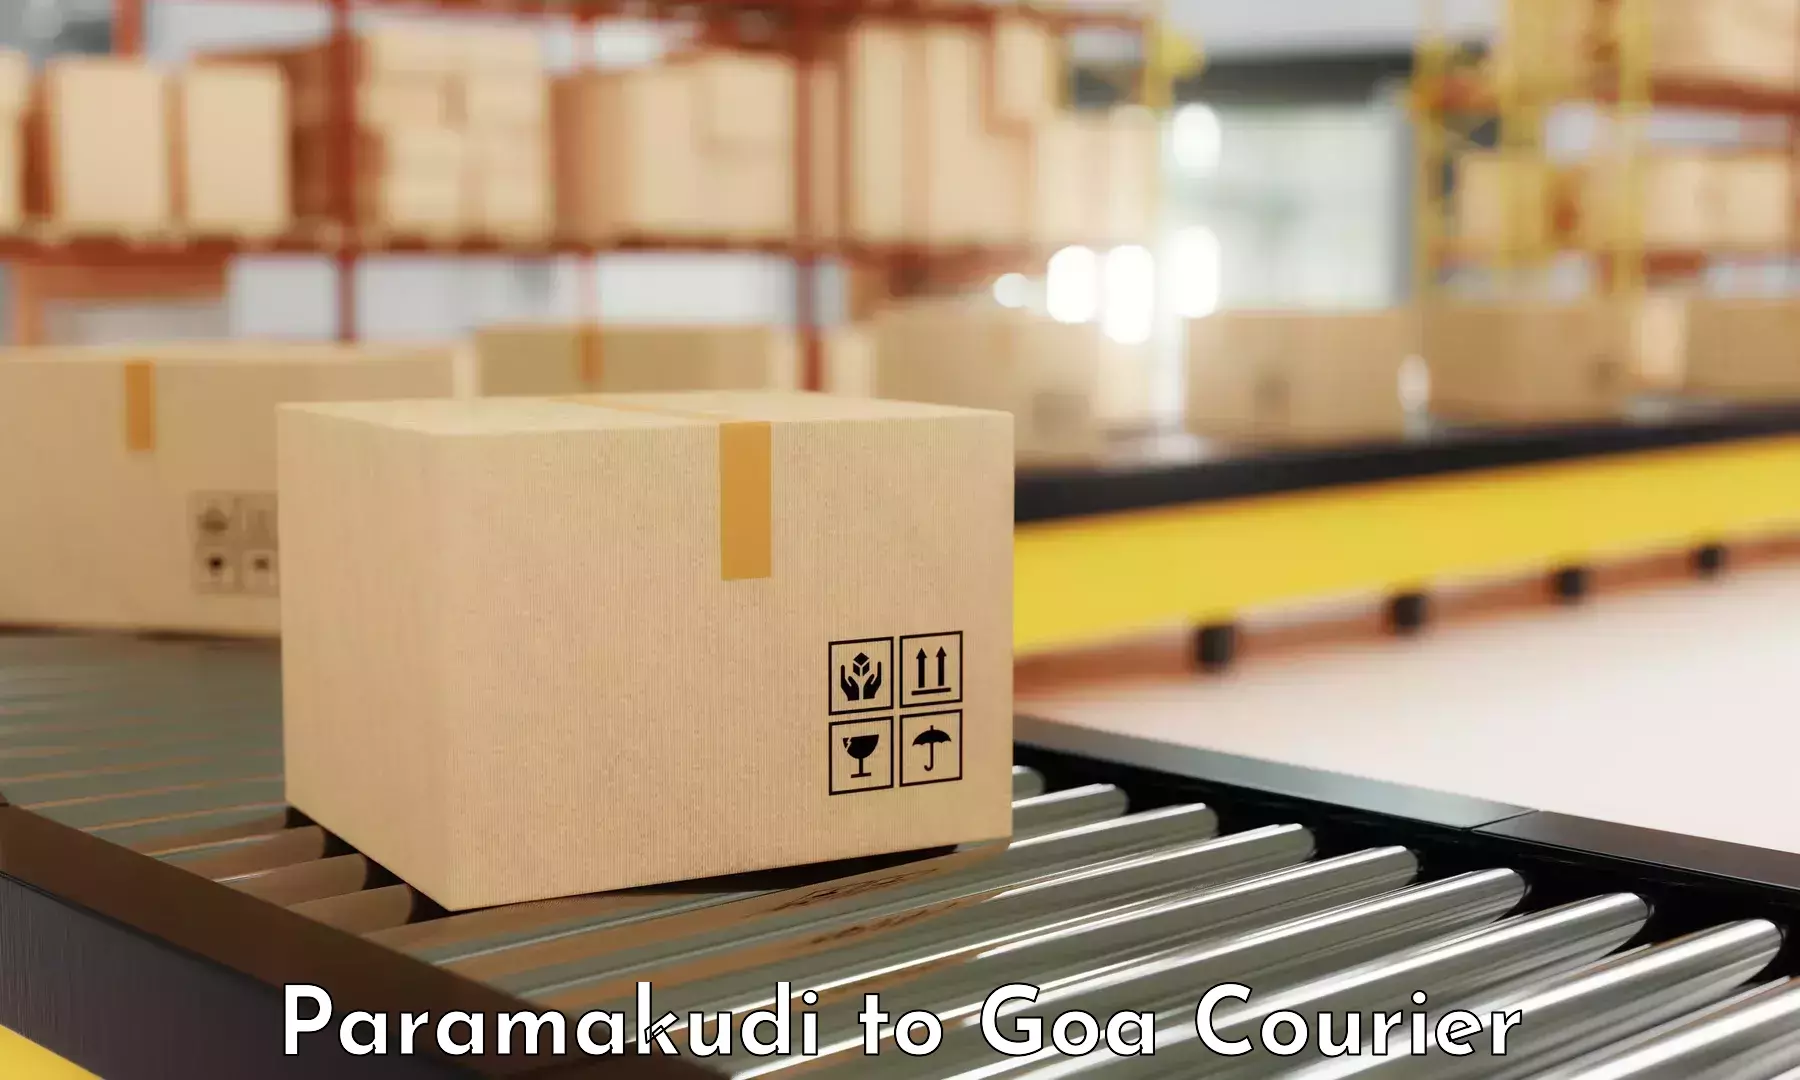 Global delivery options Paramakudi to Panaji